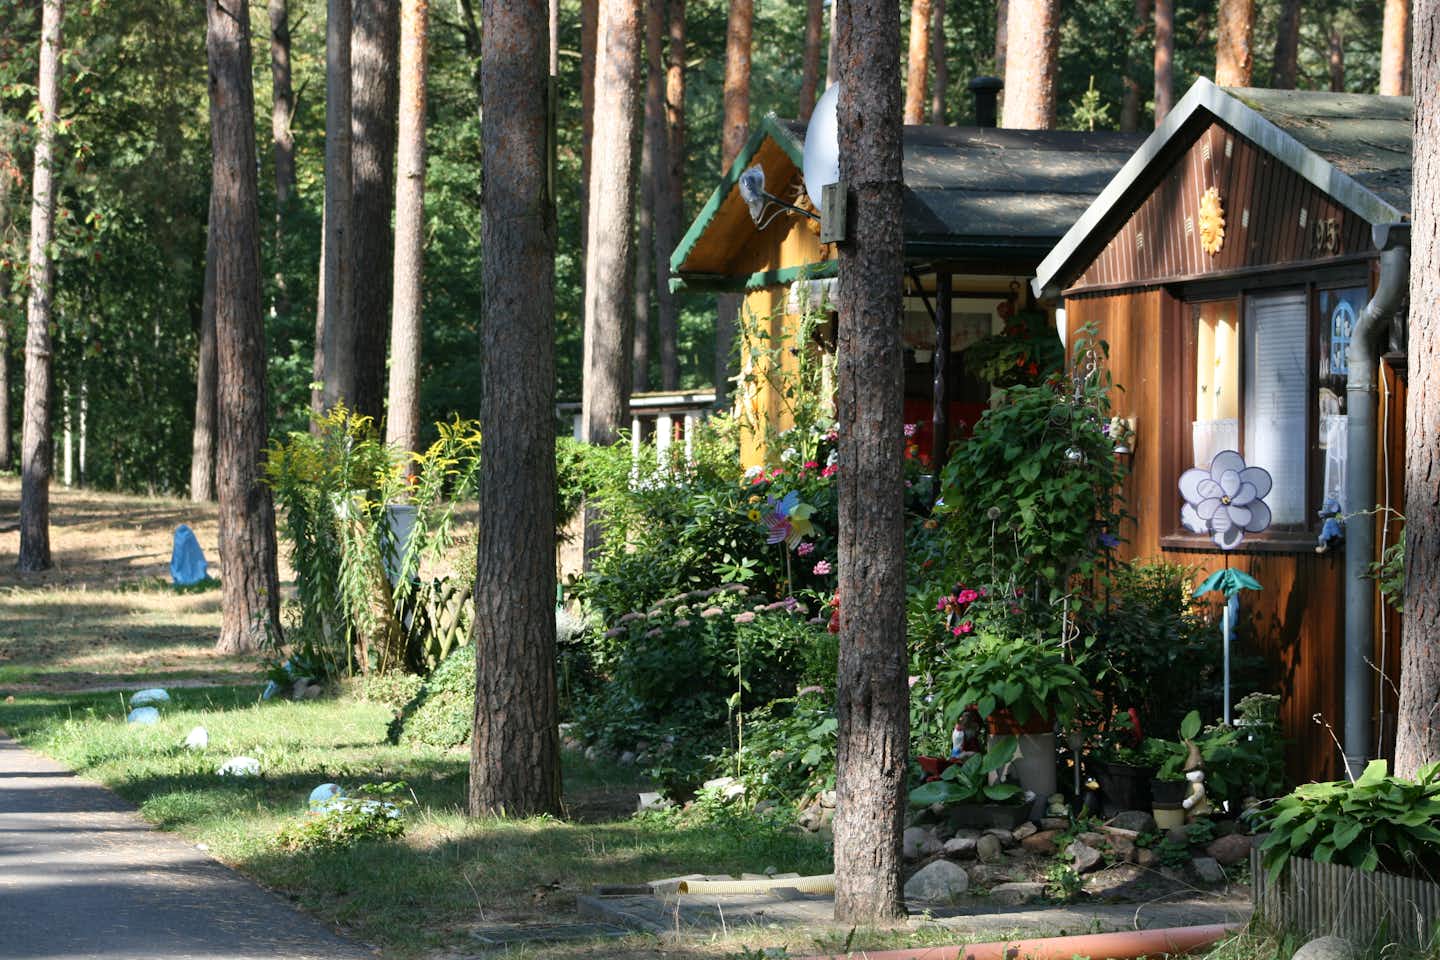 Campingplatz Arendsee - Mietshäuser unter Bäumen auf dem Campinggelände